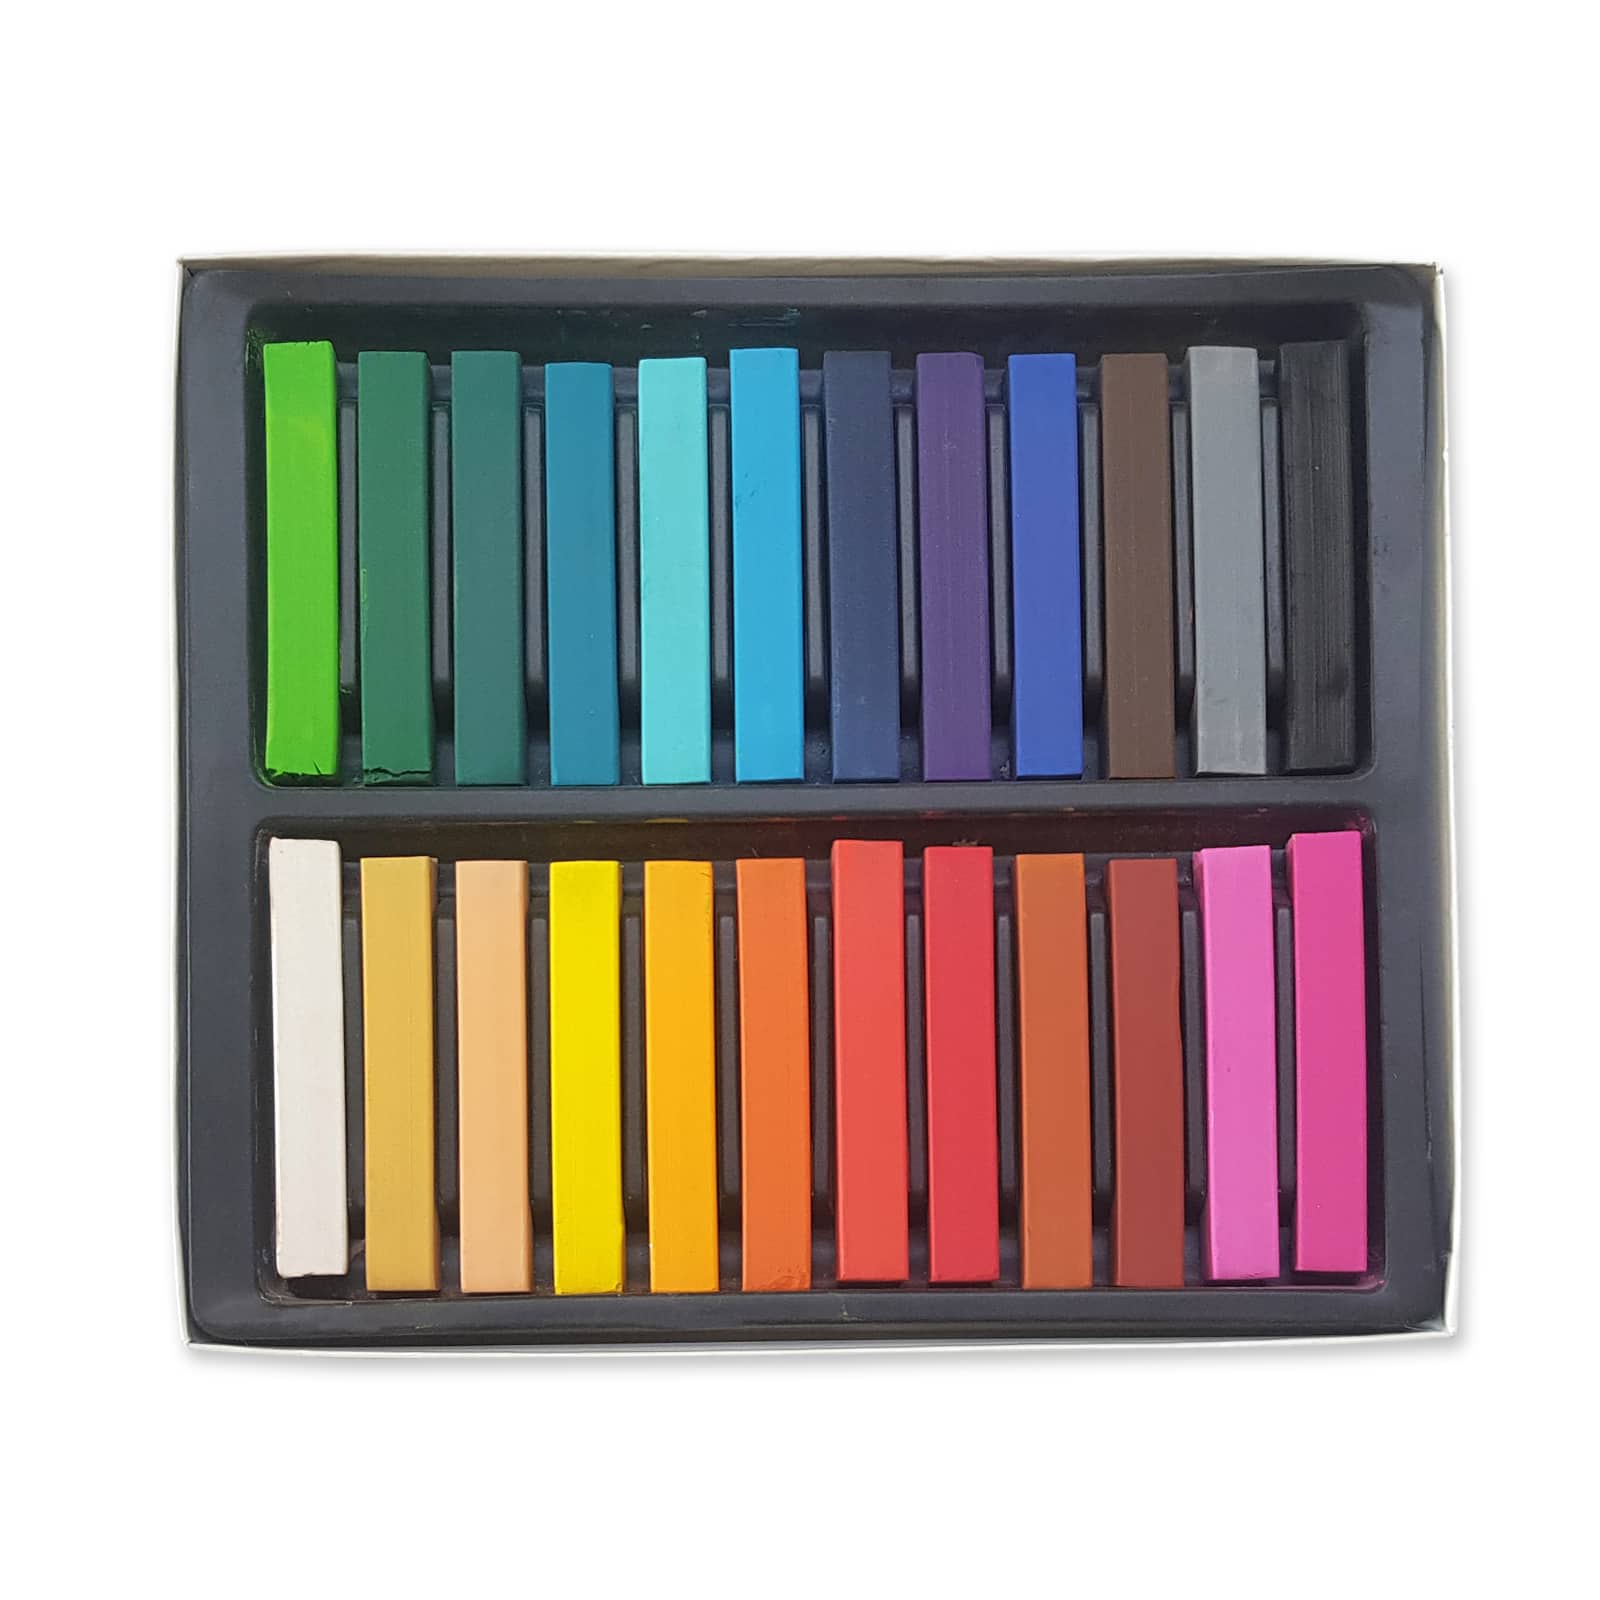 6 Packs: 24 ct. (144 total) Soft Pastels Colors by Artist's Loft